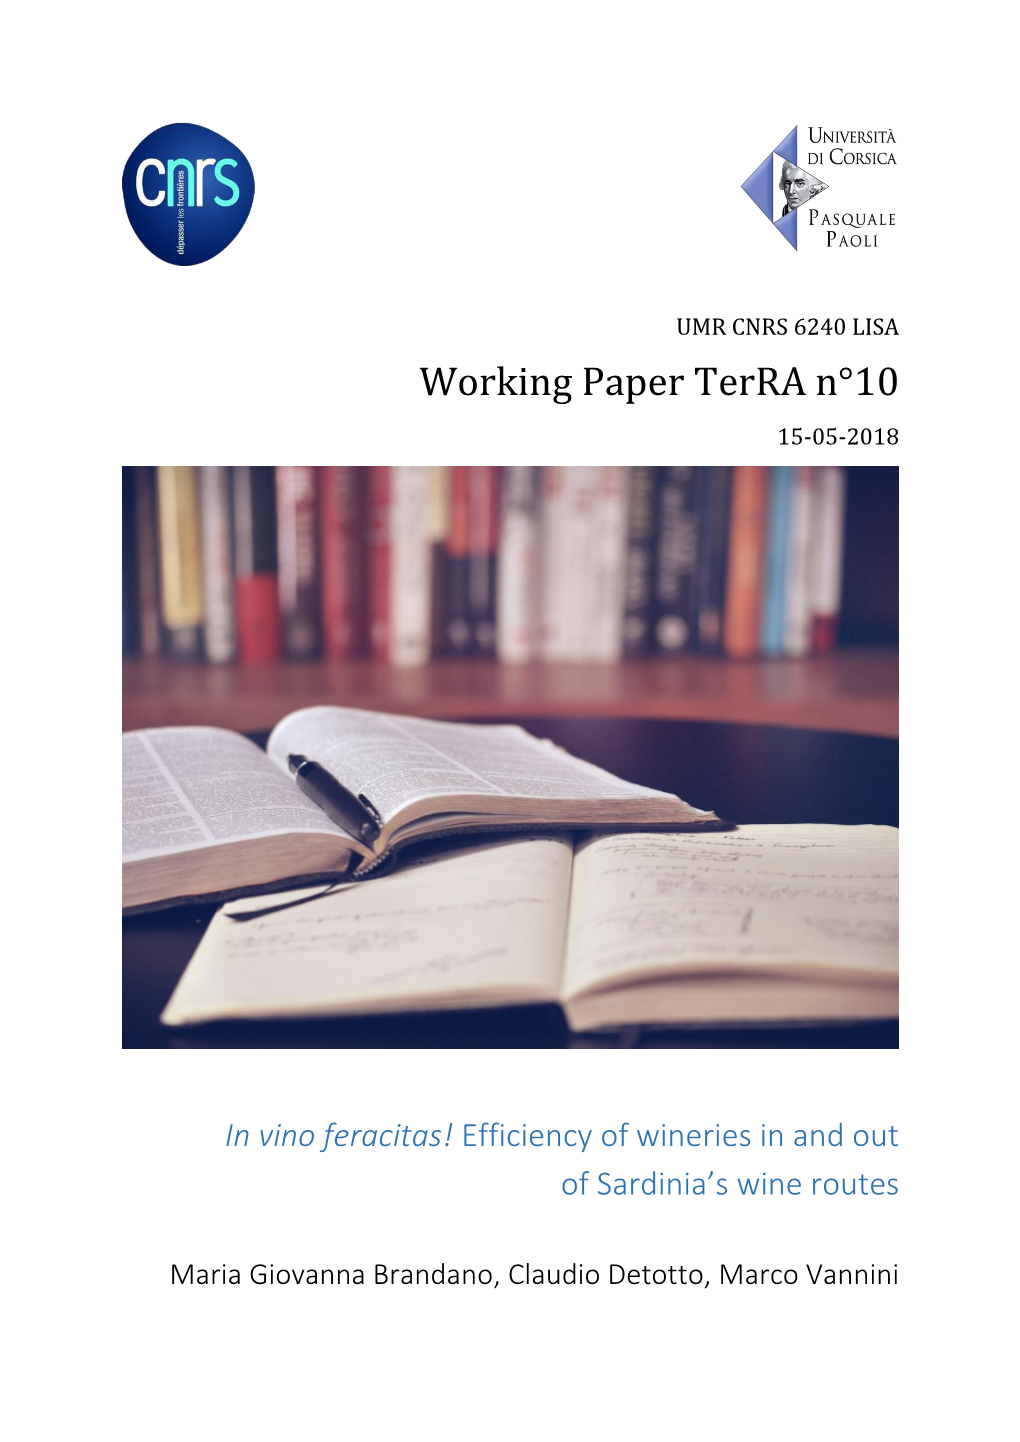 Working Paper Terra N°10